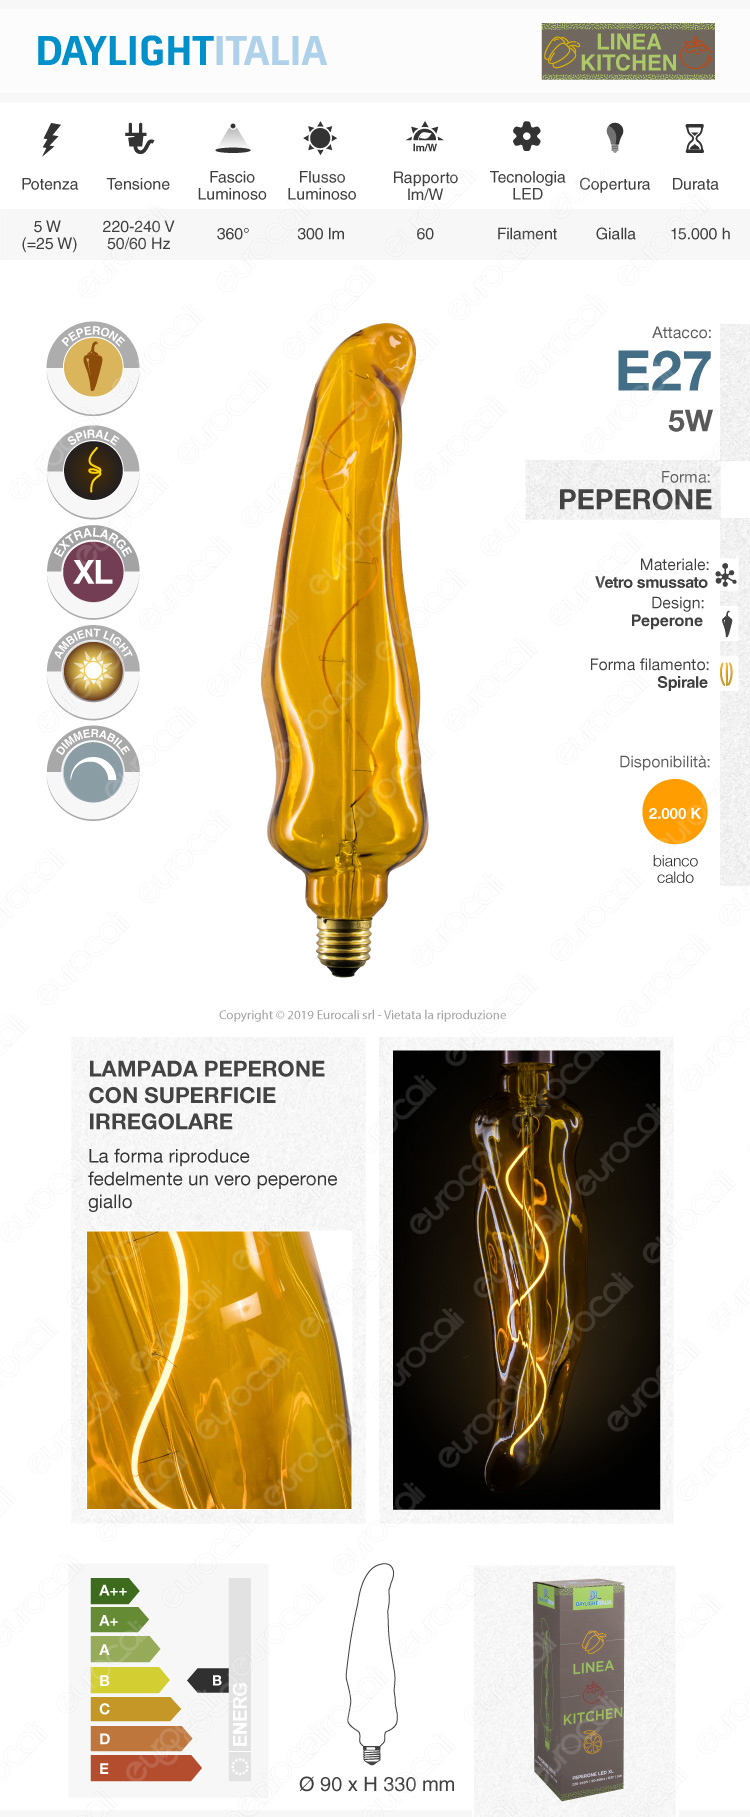 Daylight Lampadina E27 Filamento LED a Spirale 5W Linea Kitchen Forma Peperone con Vetro Giallo Dimmerabile